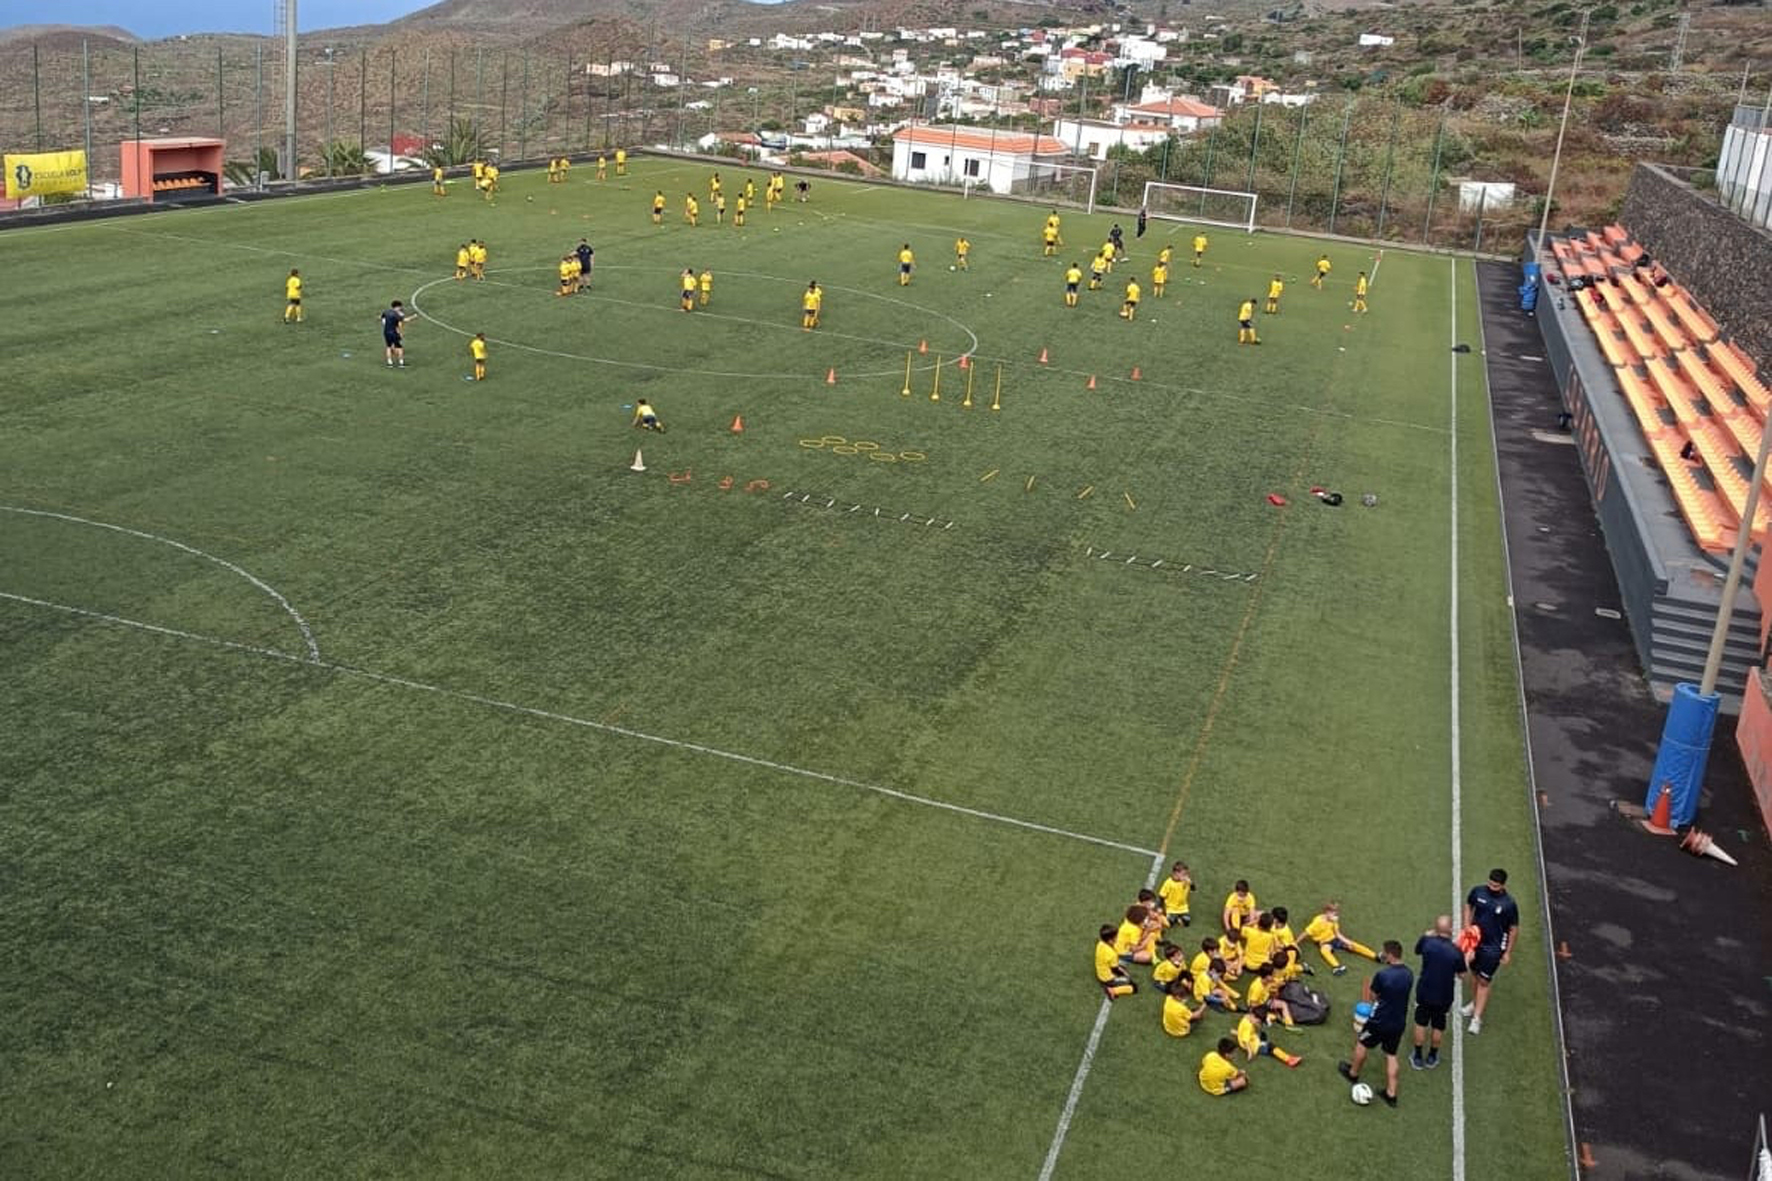 Comienza el III Campus de futbol de la UD Las Palmas en El Hierro